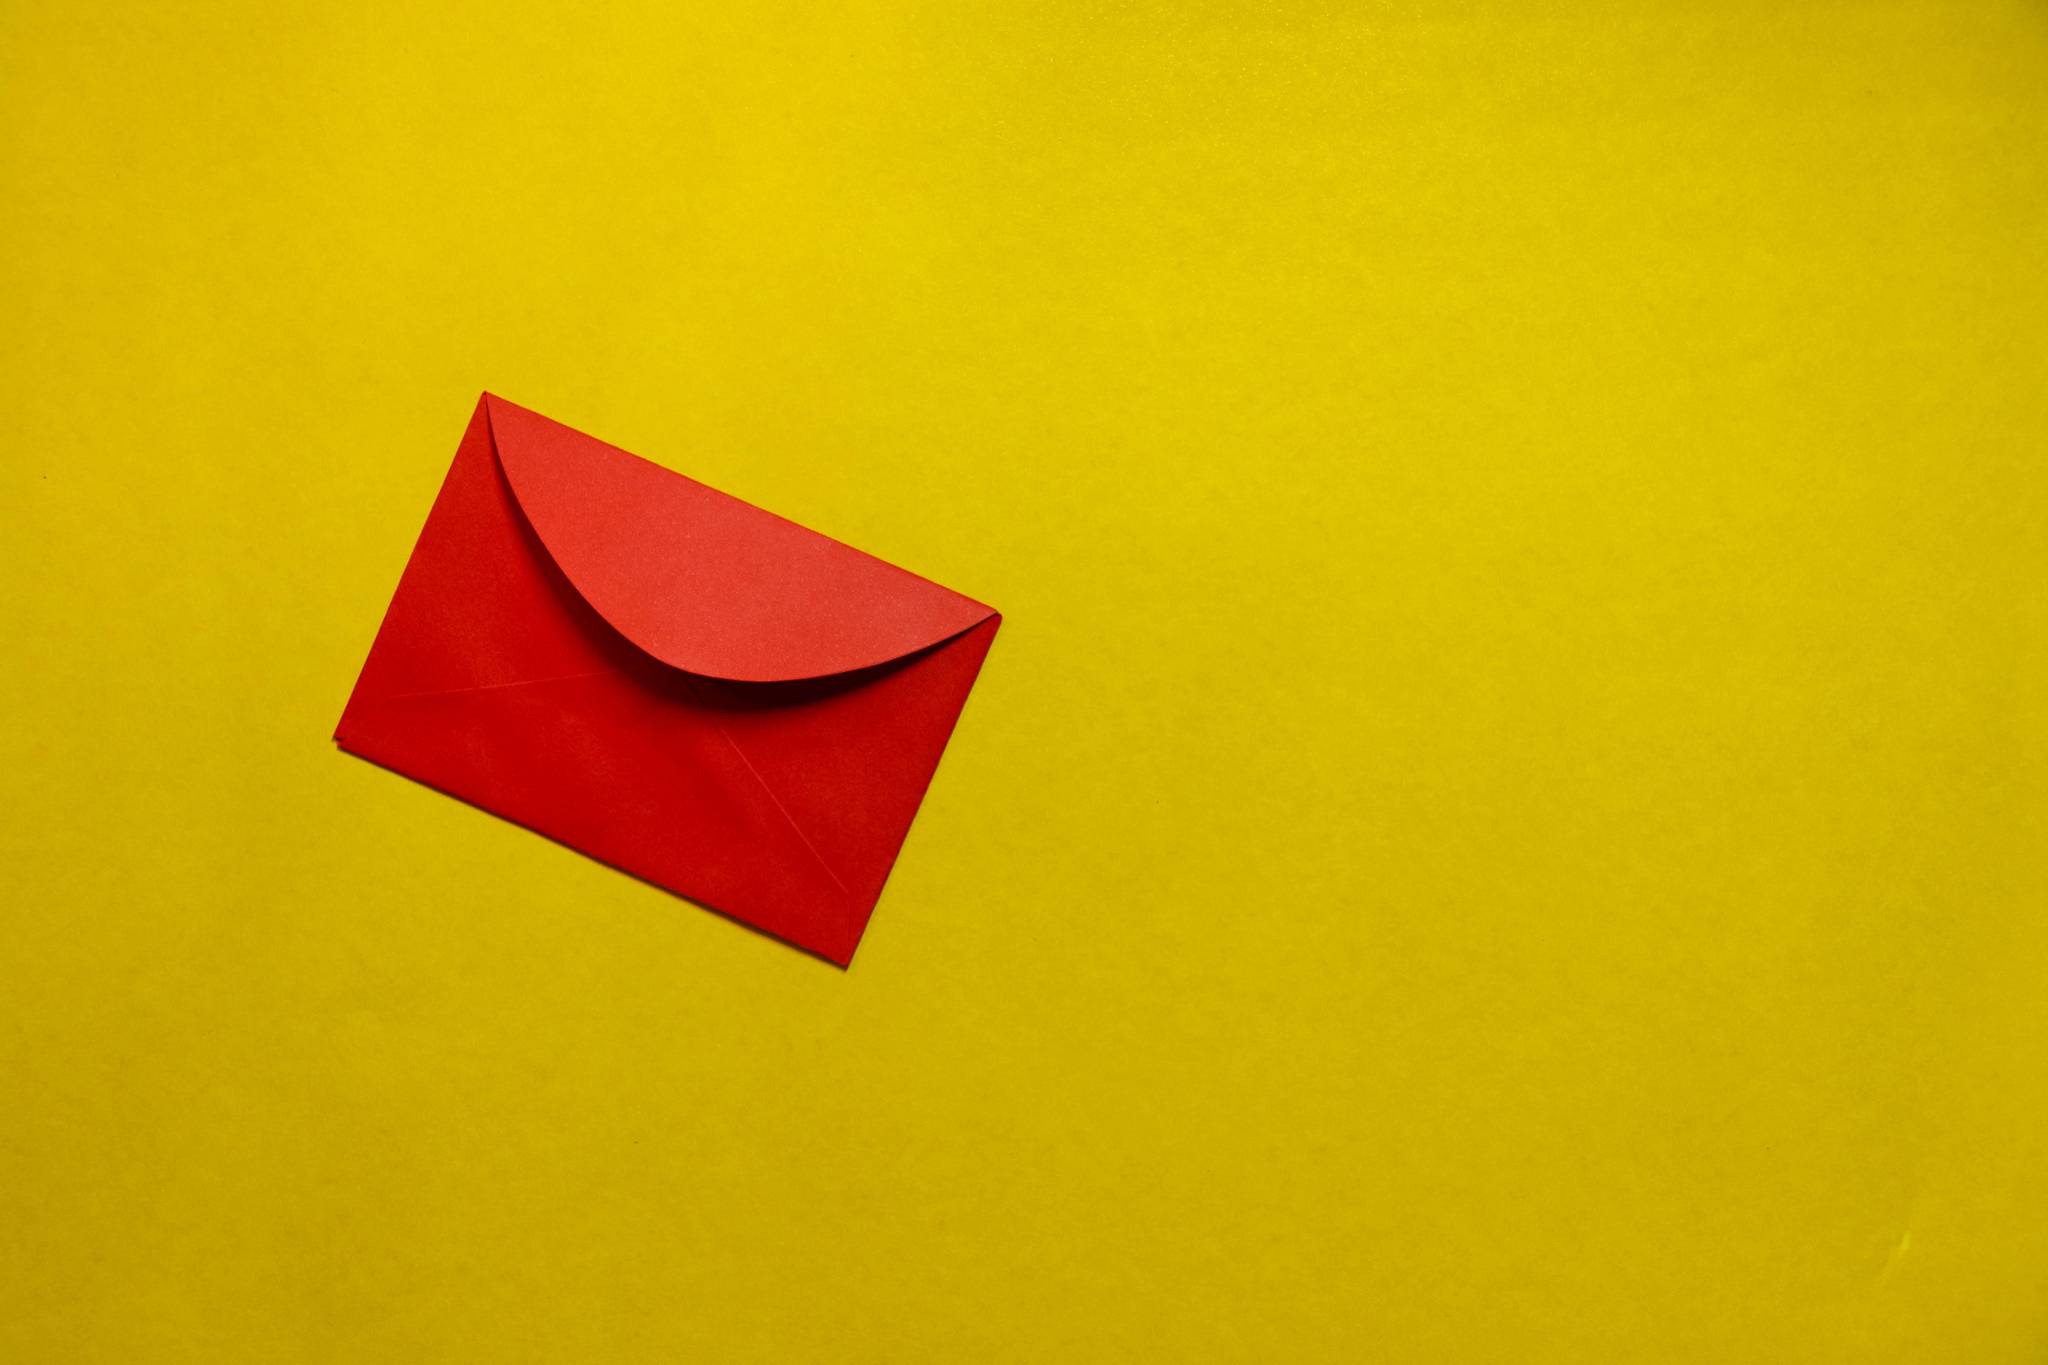 Roter Briefumschlag auf gelbem Grund